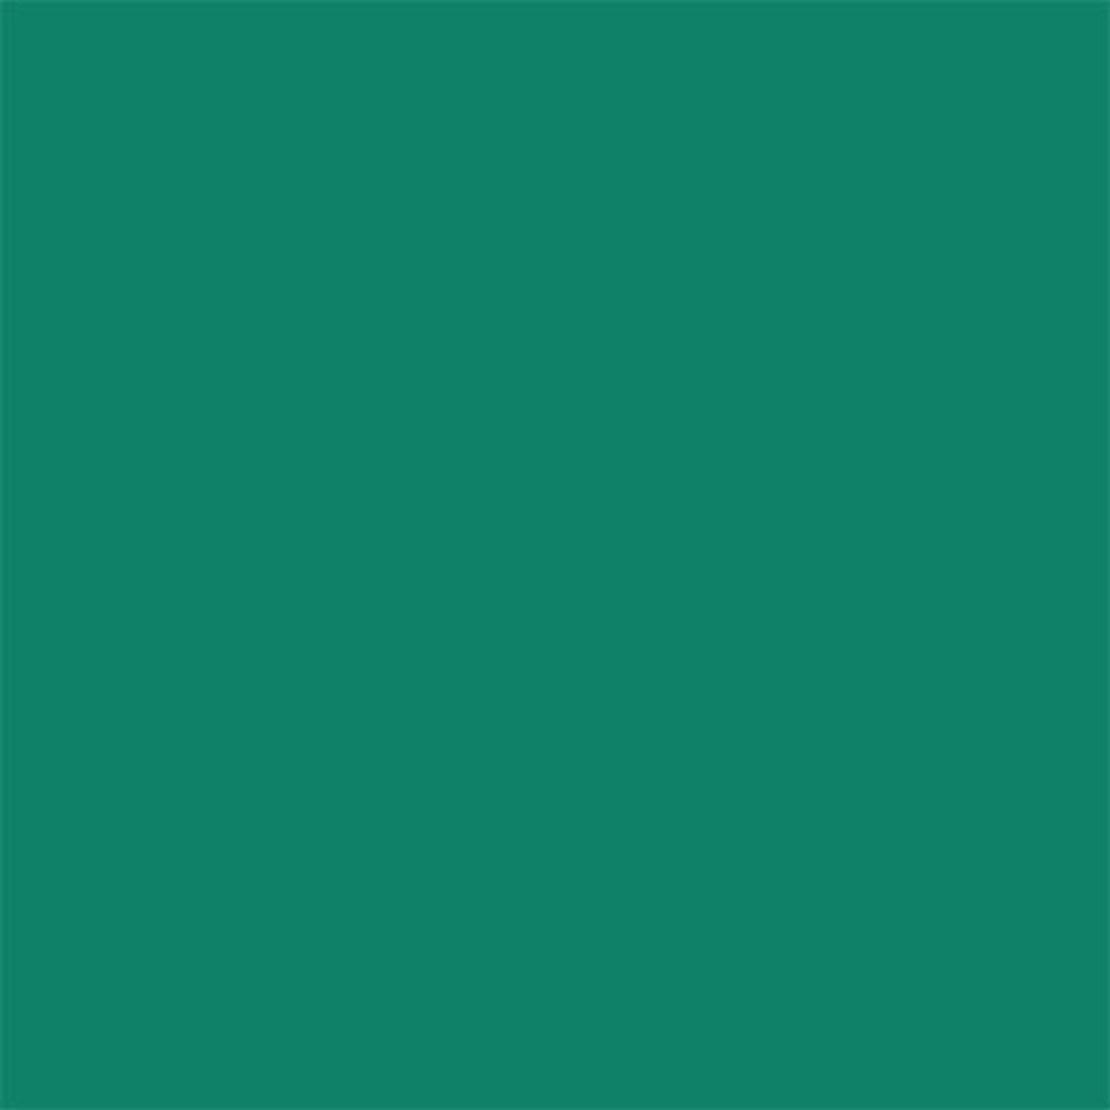 לבד – צבע ירוק ביליארד 90/90, 3 יח' SK